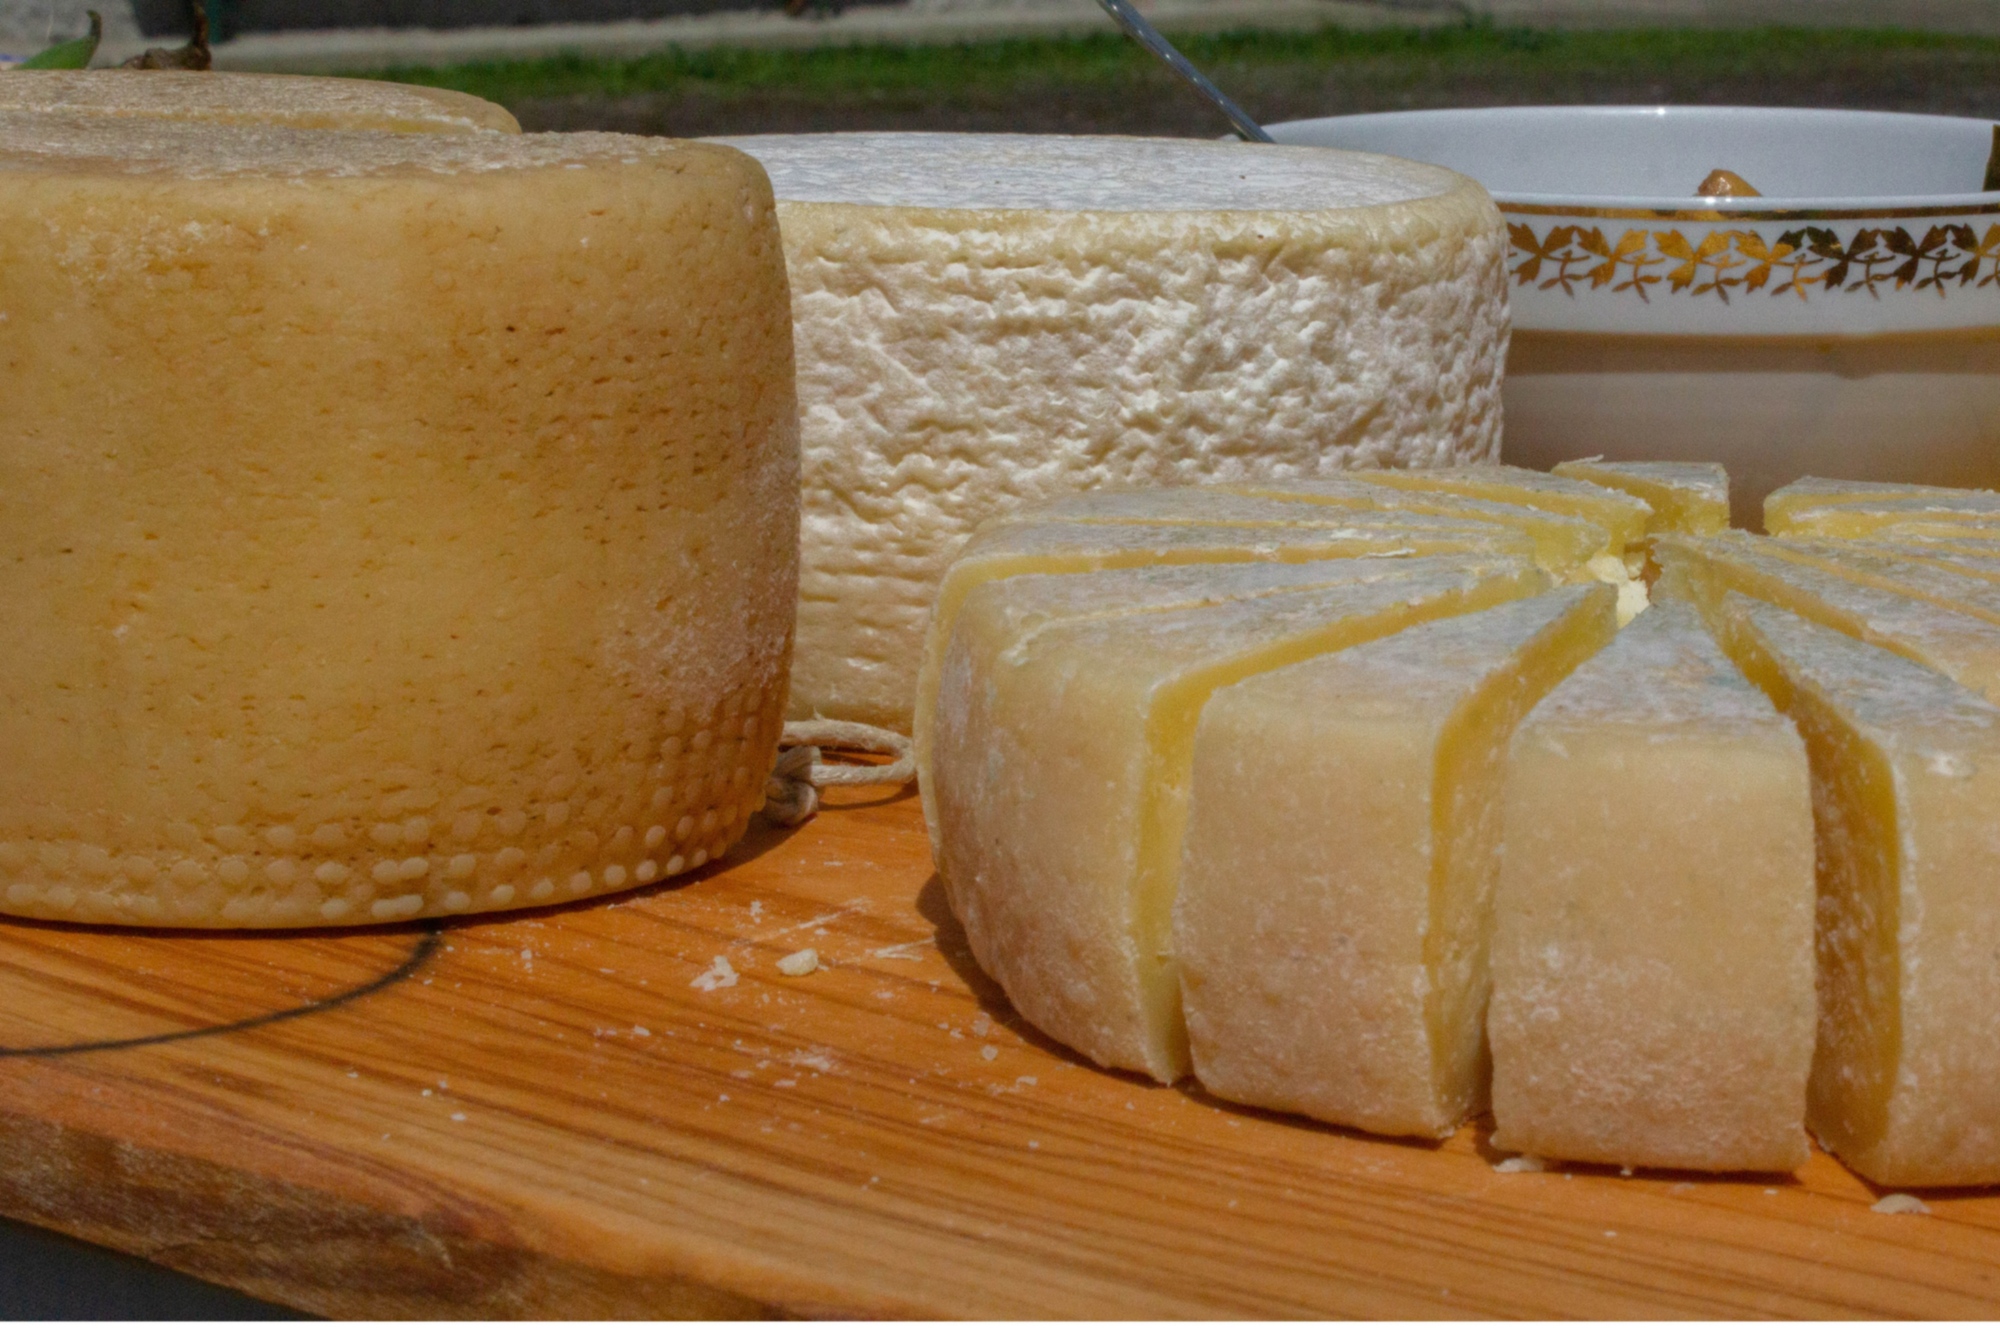 Dalla mungitura alla preparazione del formaggio, un’esperienza all’aria aperta assaporando antichi saperi in Alta Lunigiana